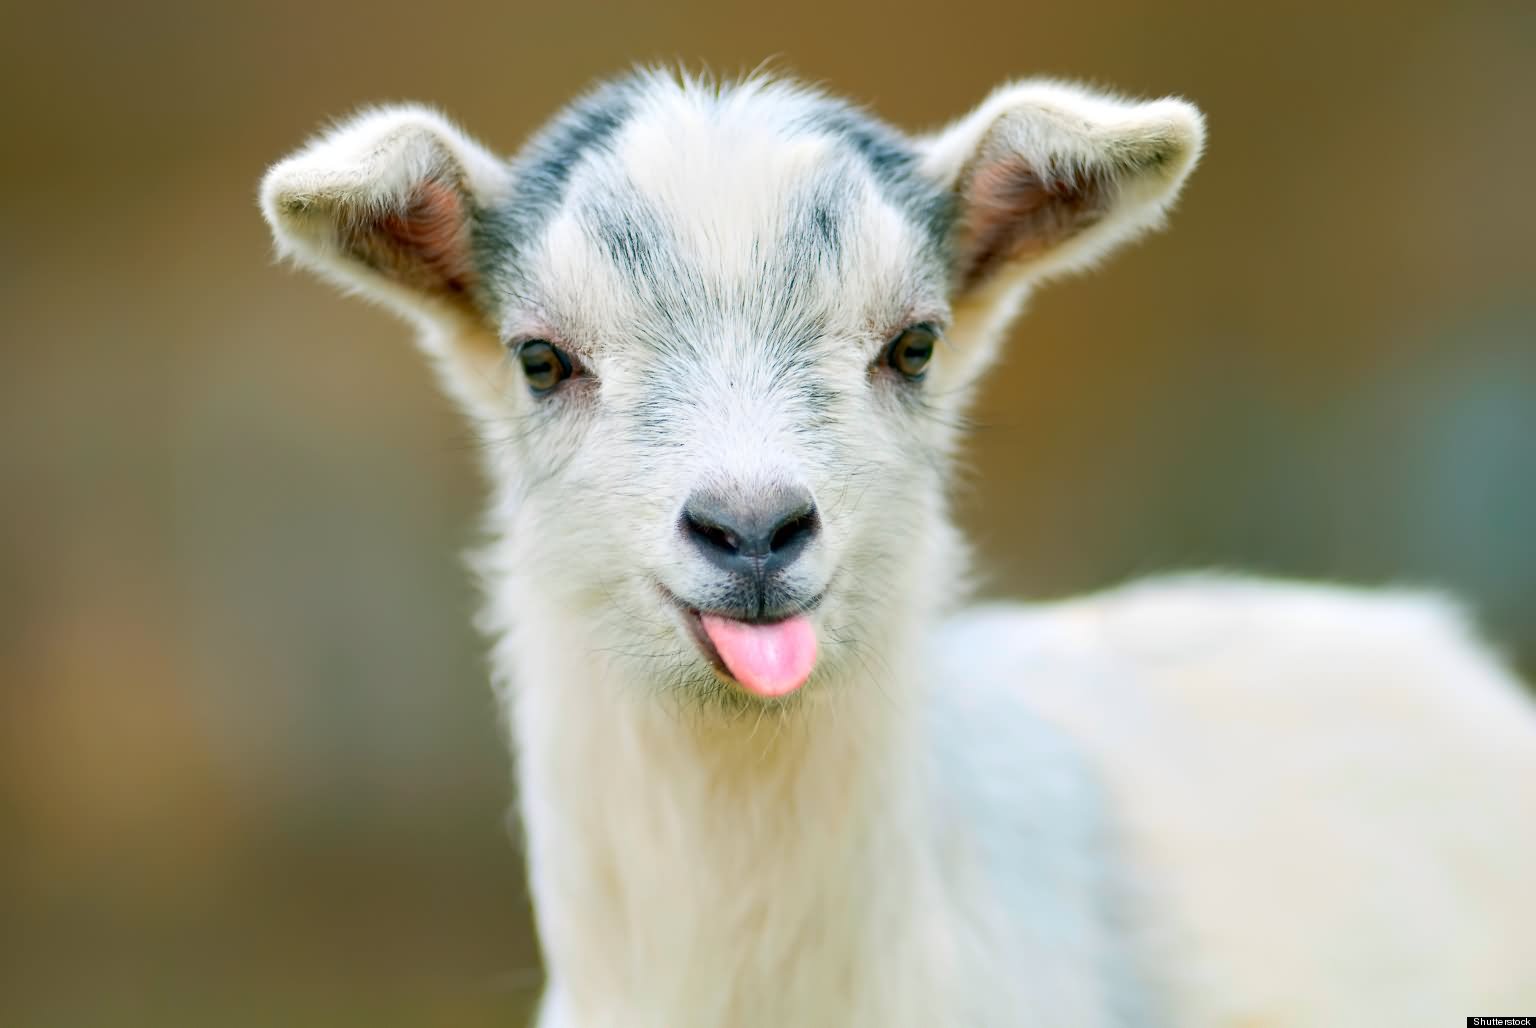 Rsultats de recherche dimages pour goat face